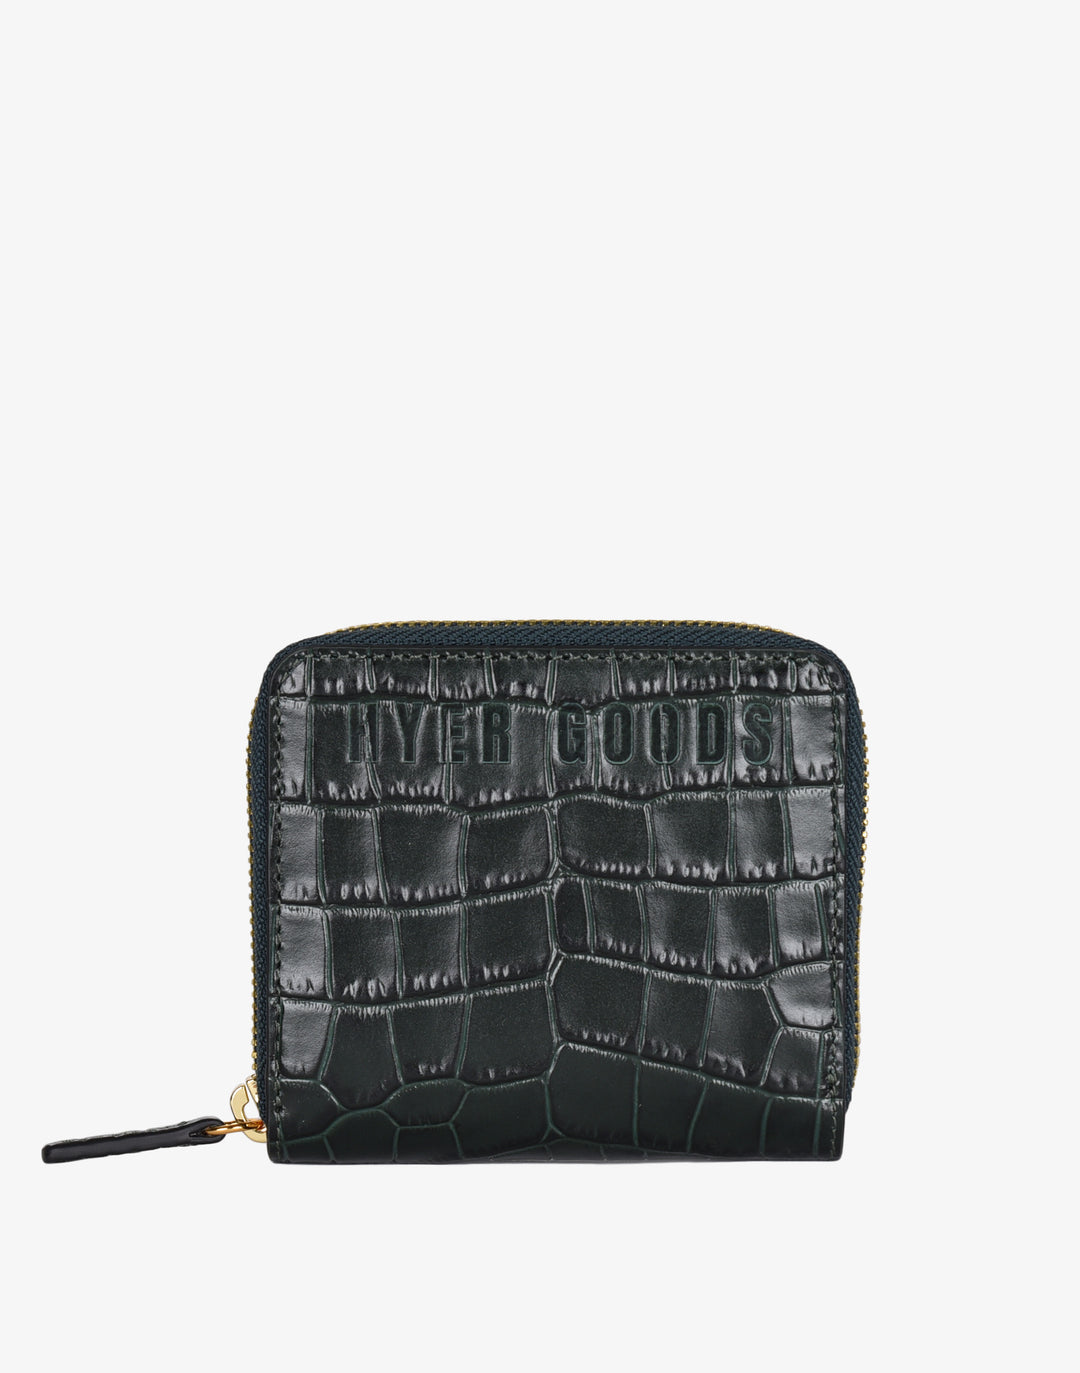 compact zip wallet - black